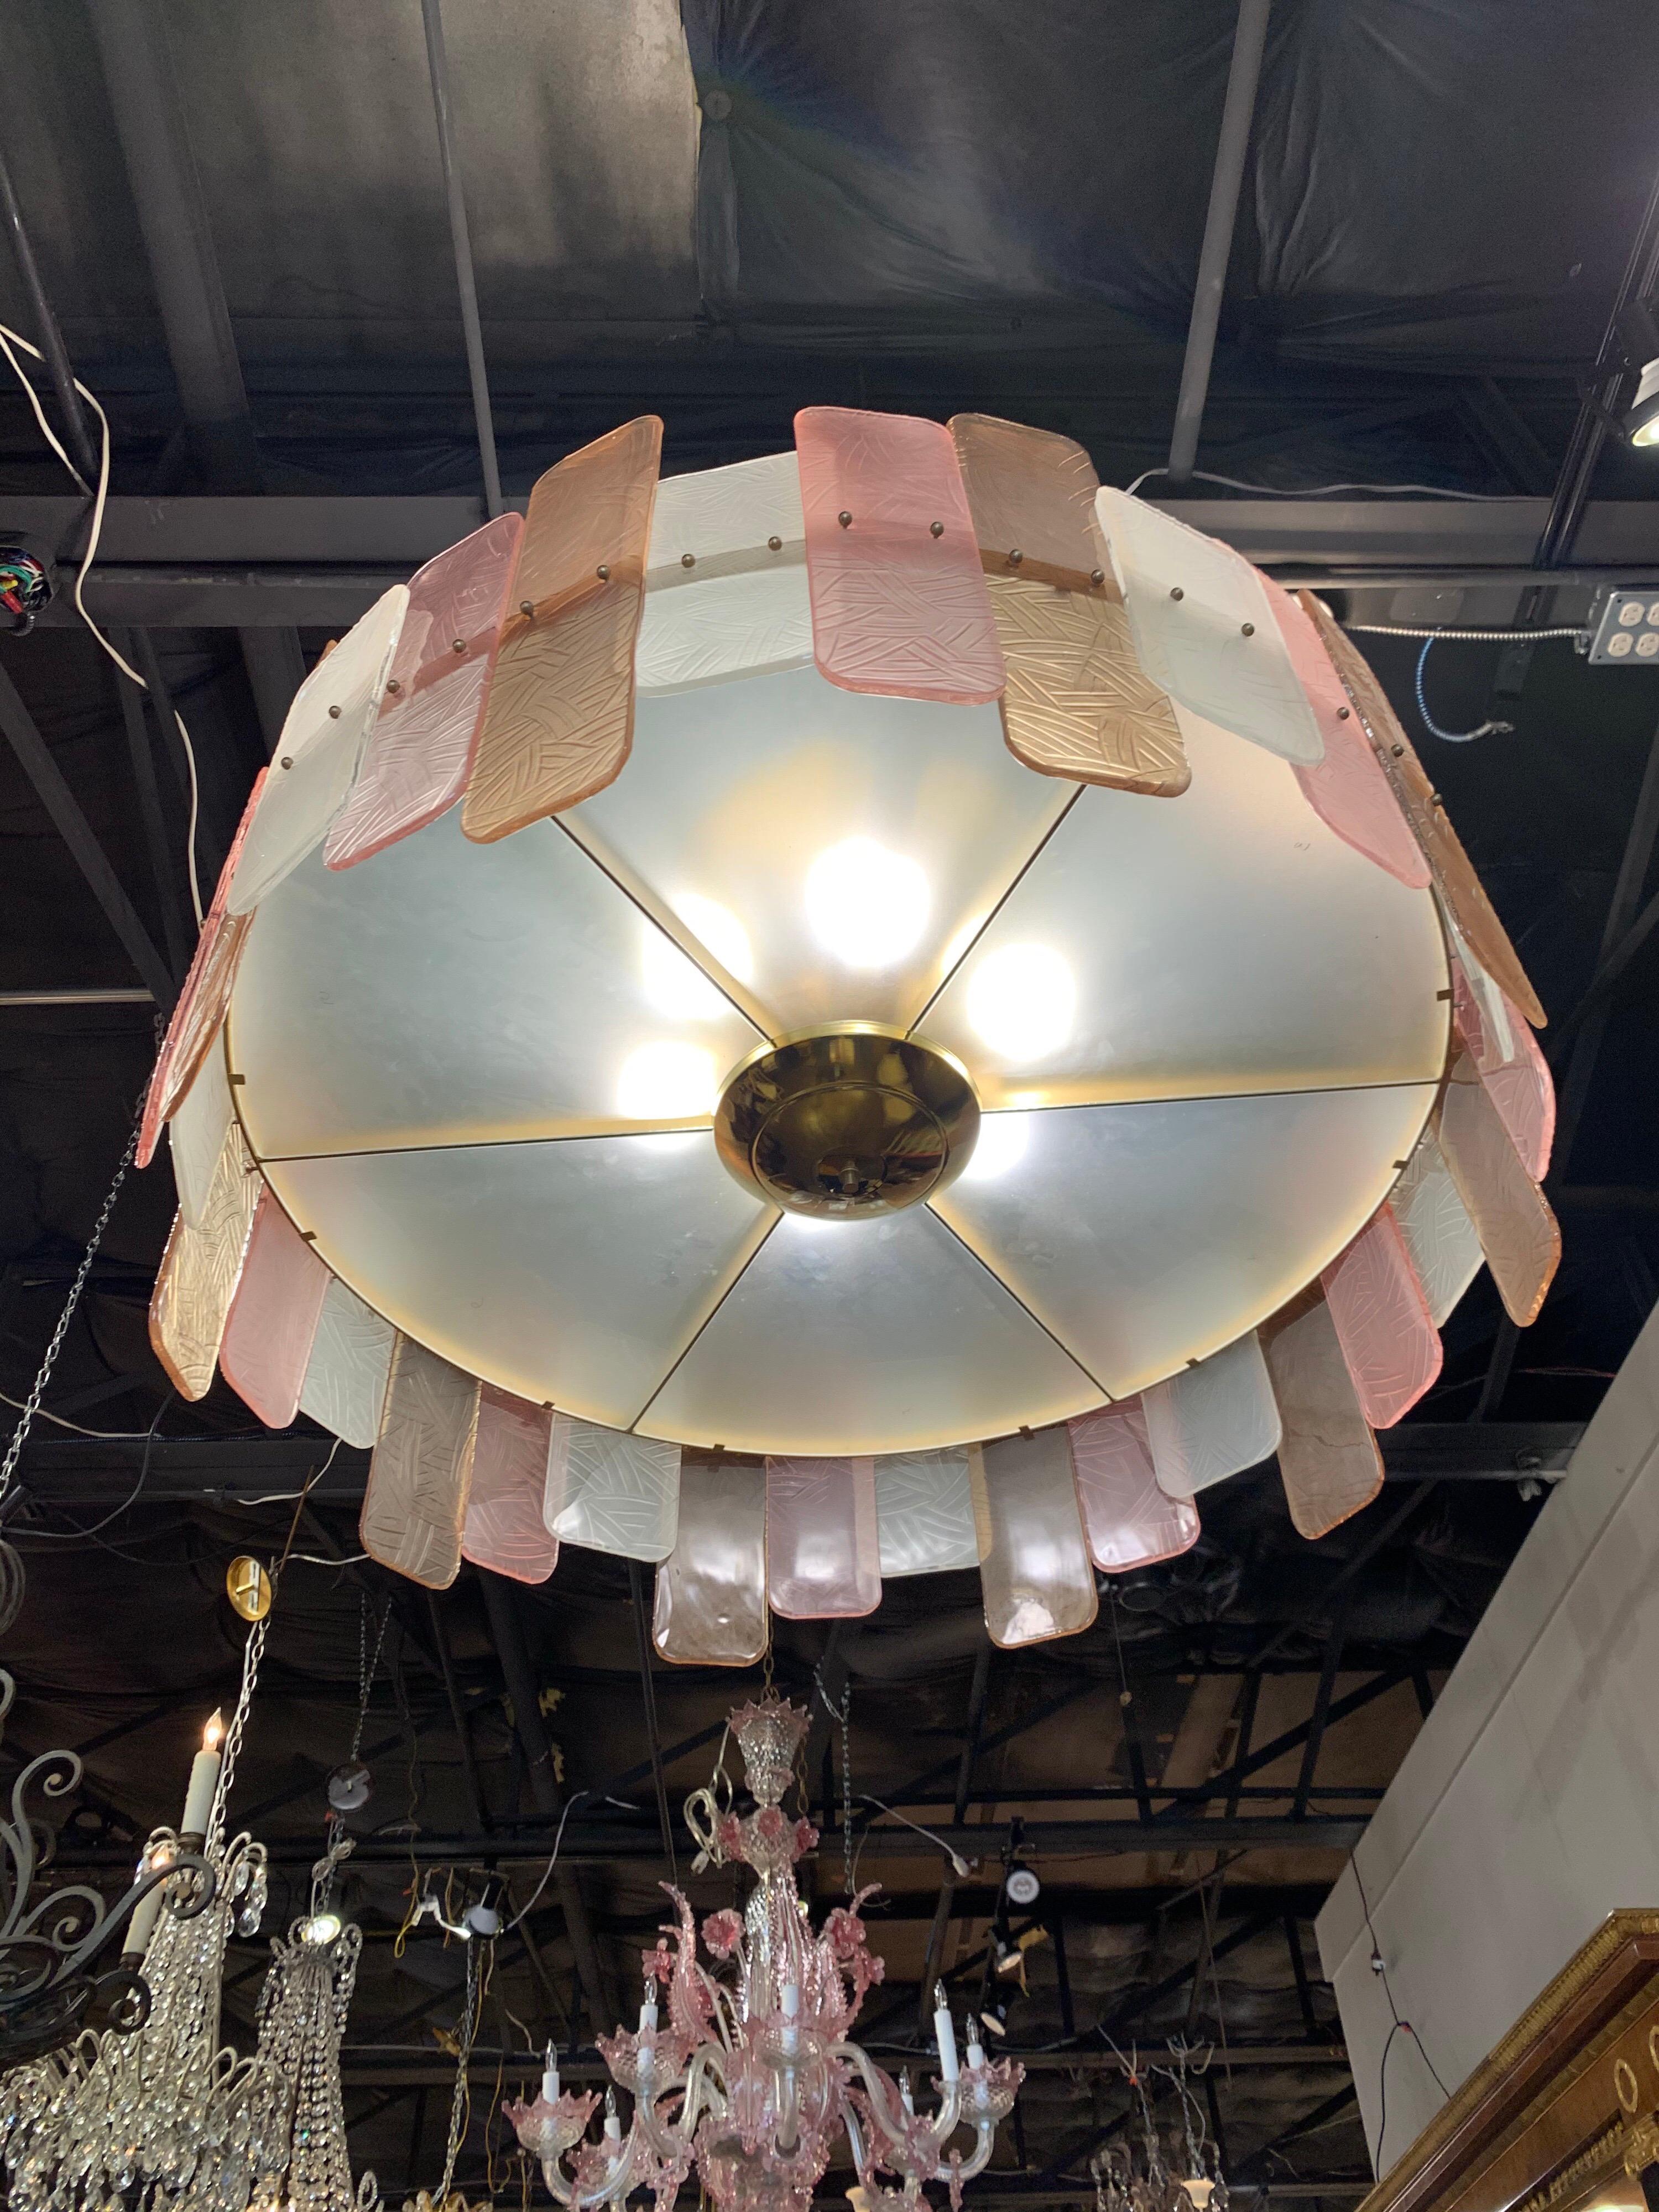 Superbe lustre moderne rond multicolore en verre de Murano. Des rectangles de verre texturés dans les couleurs rose, beige et blanc. Un luminaire très unique qui ferait une belle touche décorative !